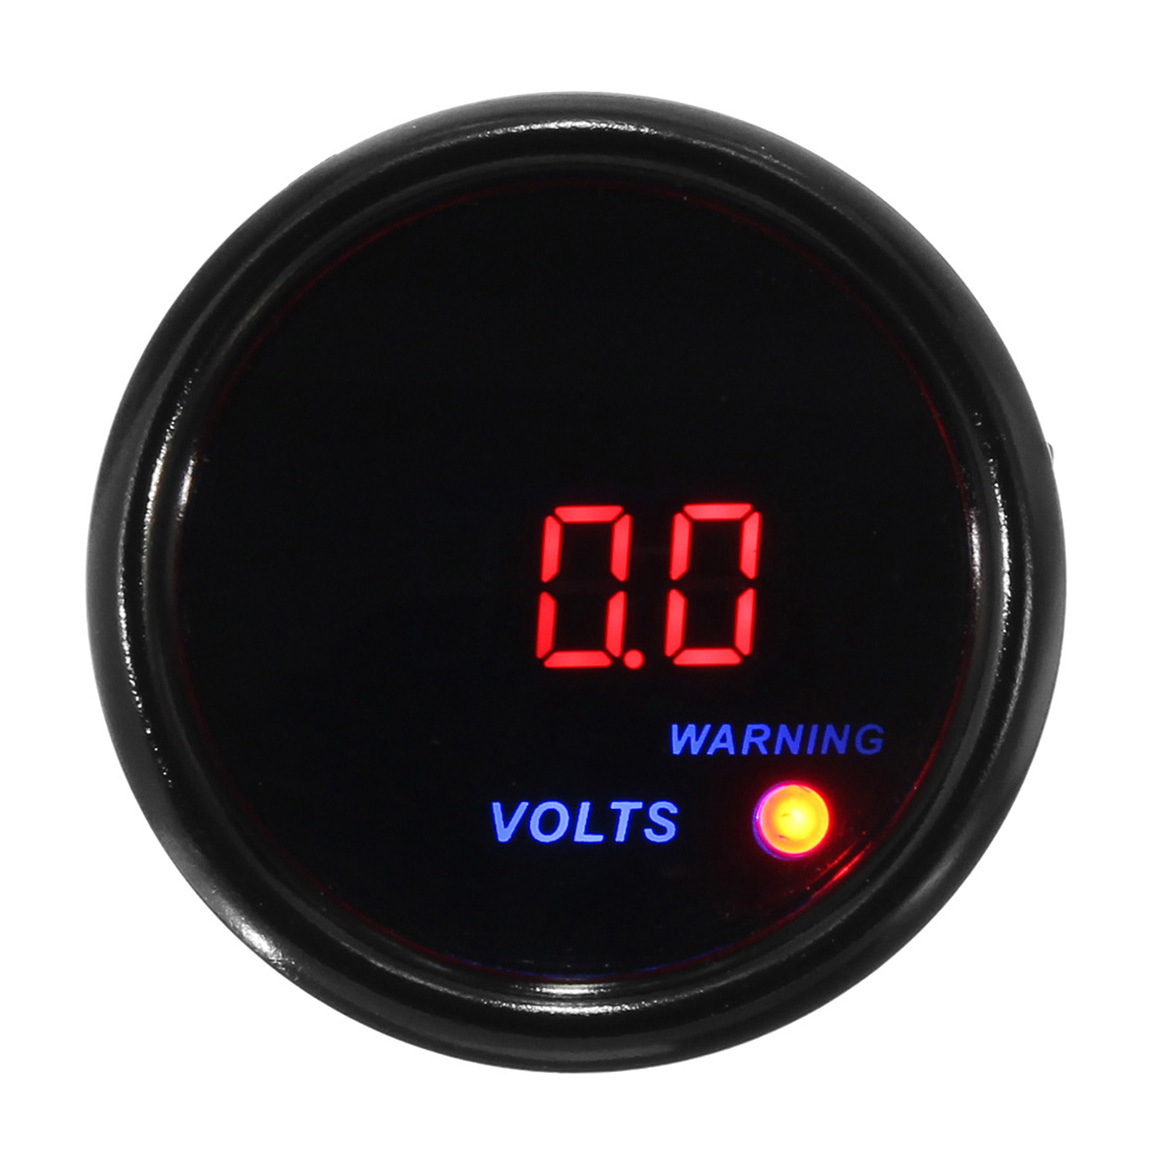 

2inch 52mm 8-18V Voltage Volt Gauge Digital Blue+Red LED Display Black Face Meter